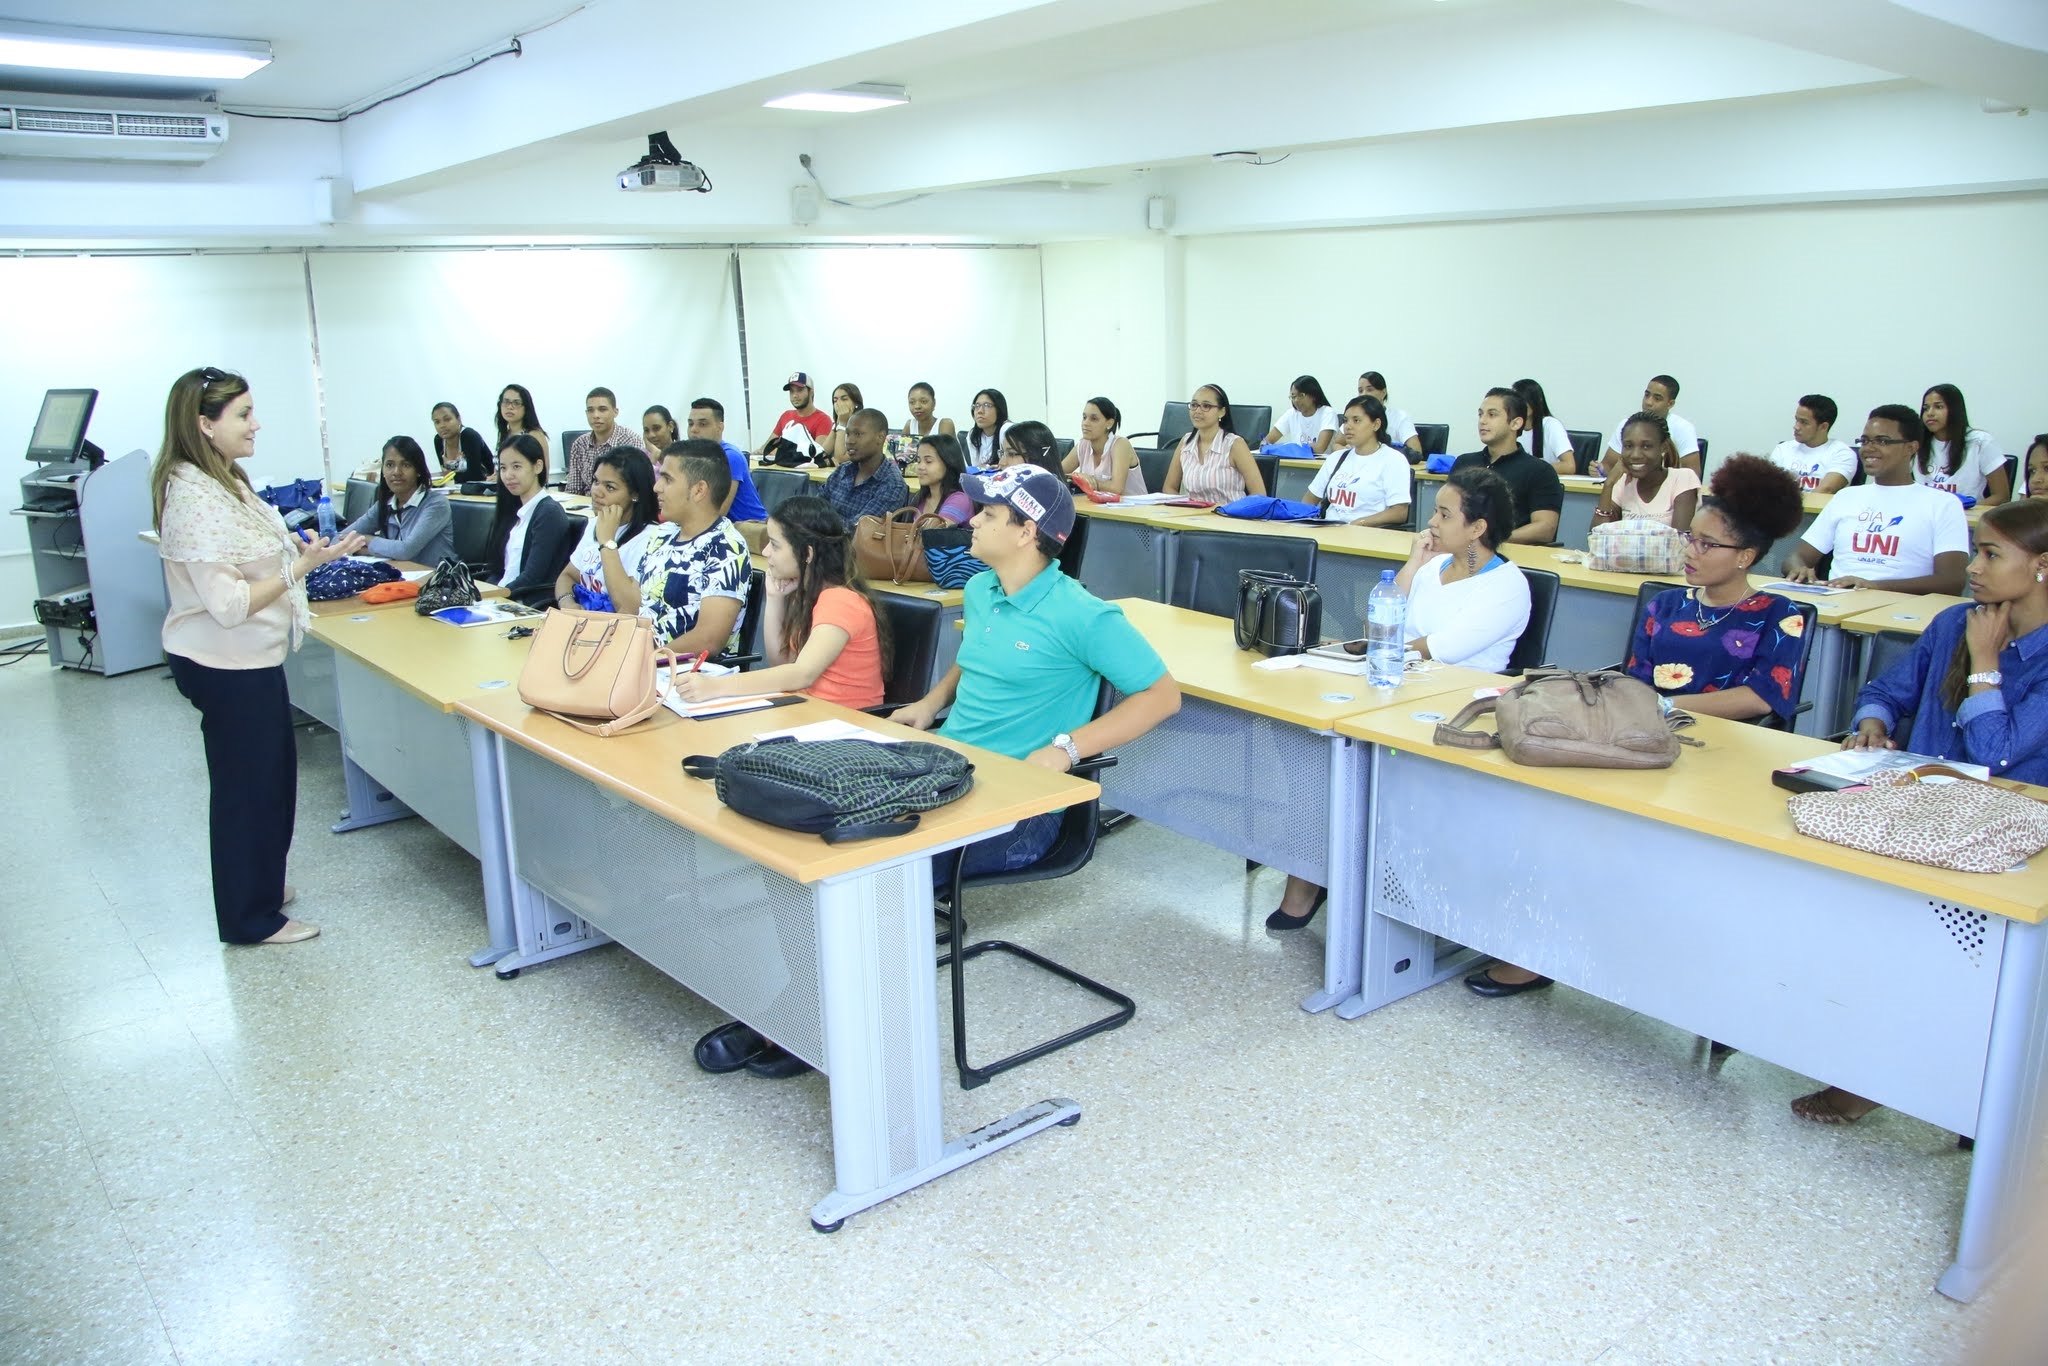 Los estudiantes pasaron por distintas áreas del campus y participaron de las clases impartidas ese día.